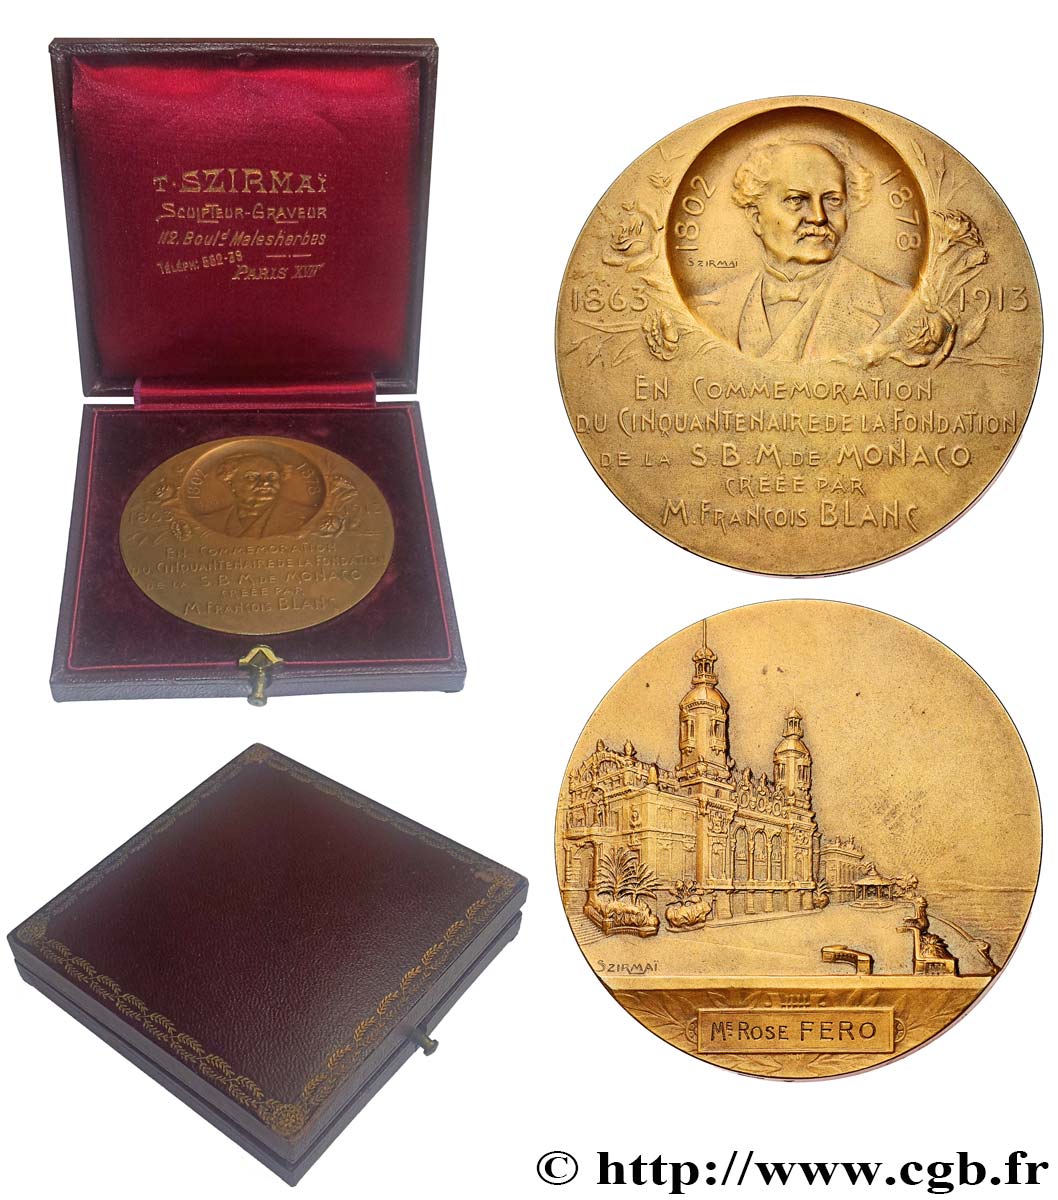 MONACO - PRINCIPALITY OF MONACO - CHARLES III Médaille, Commémoration du cinquantenaire de la fondation de la S. B. M. de Monaco AU